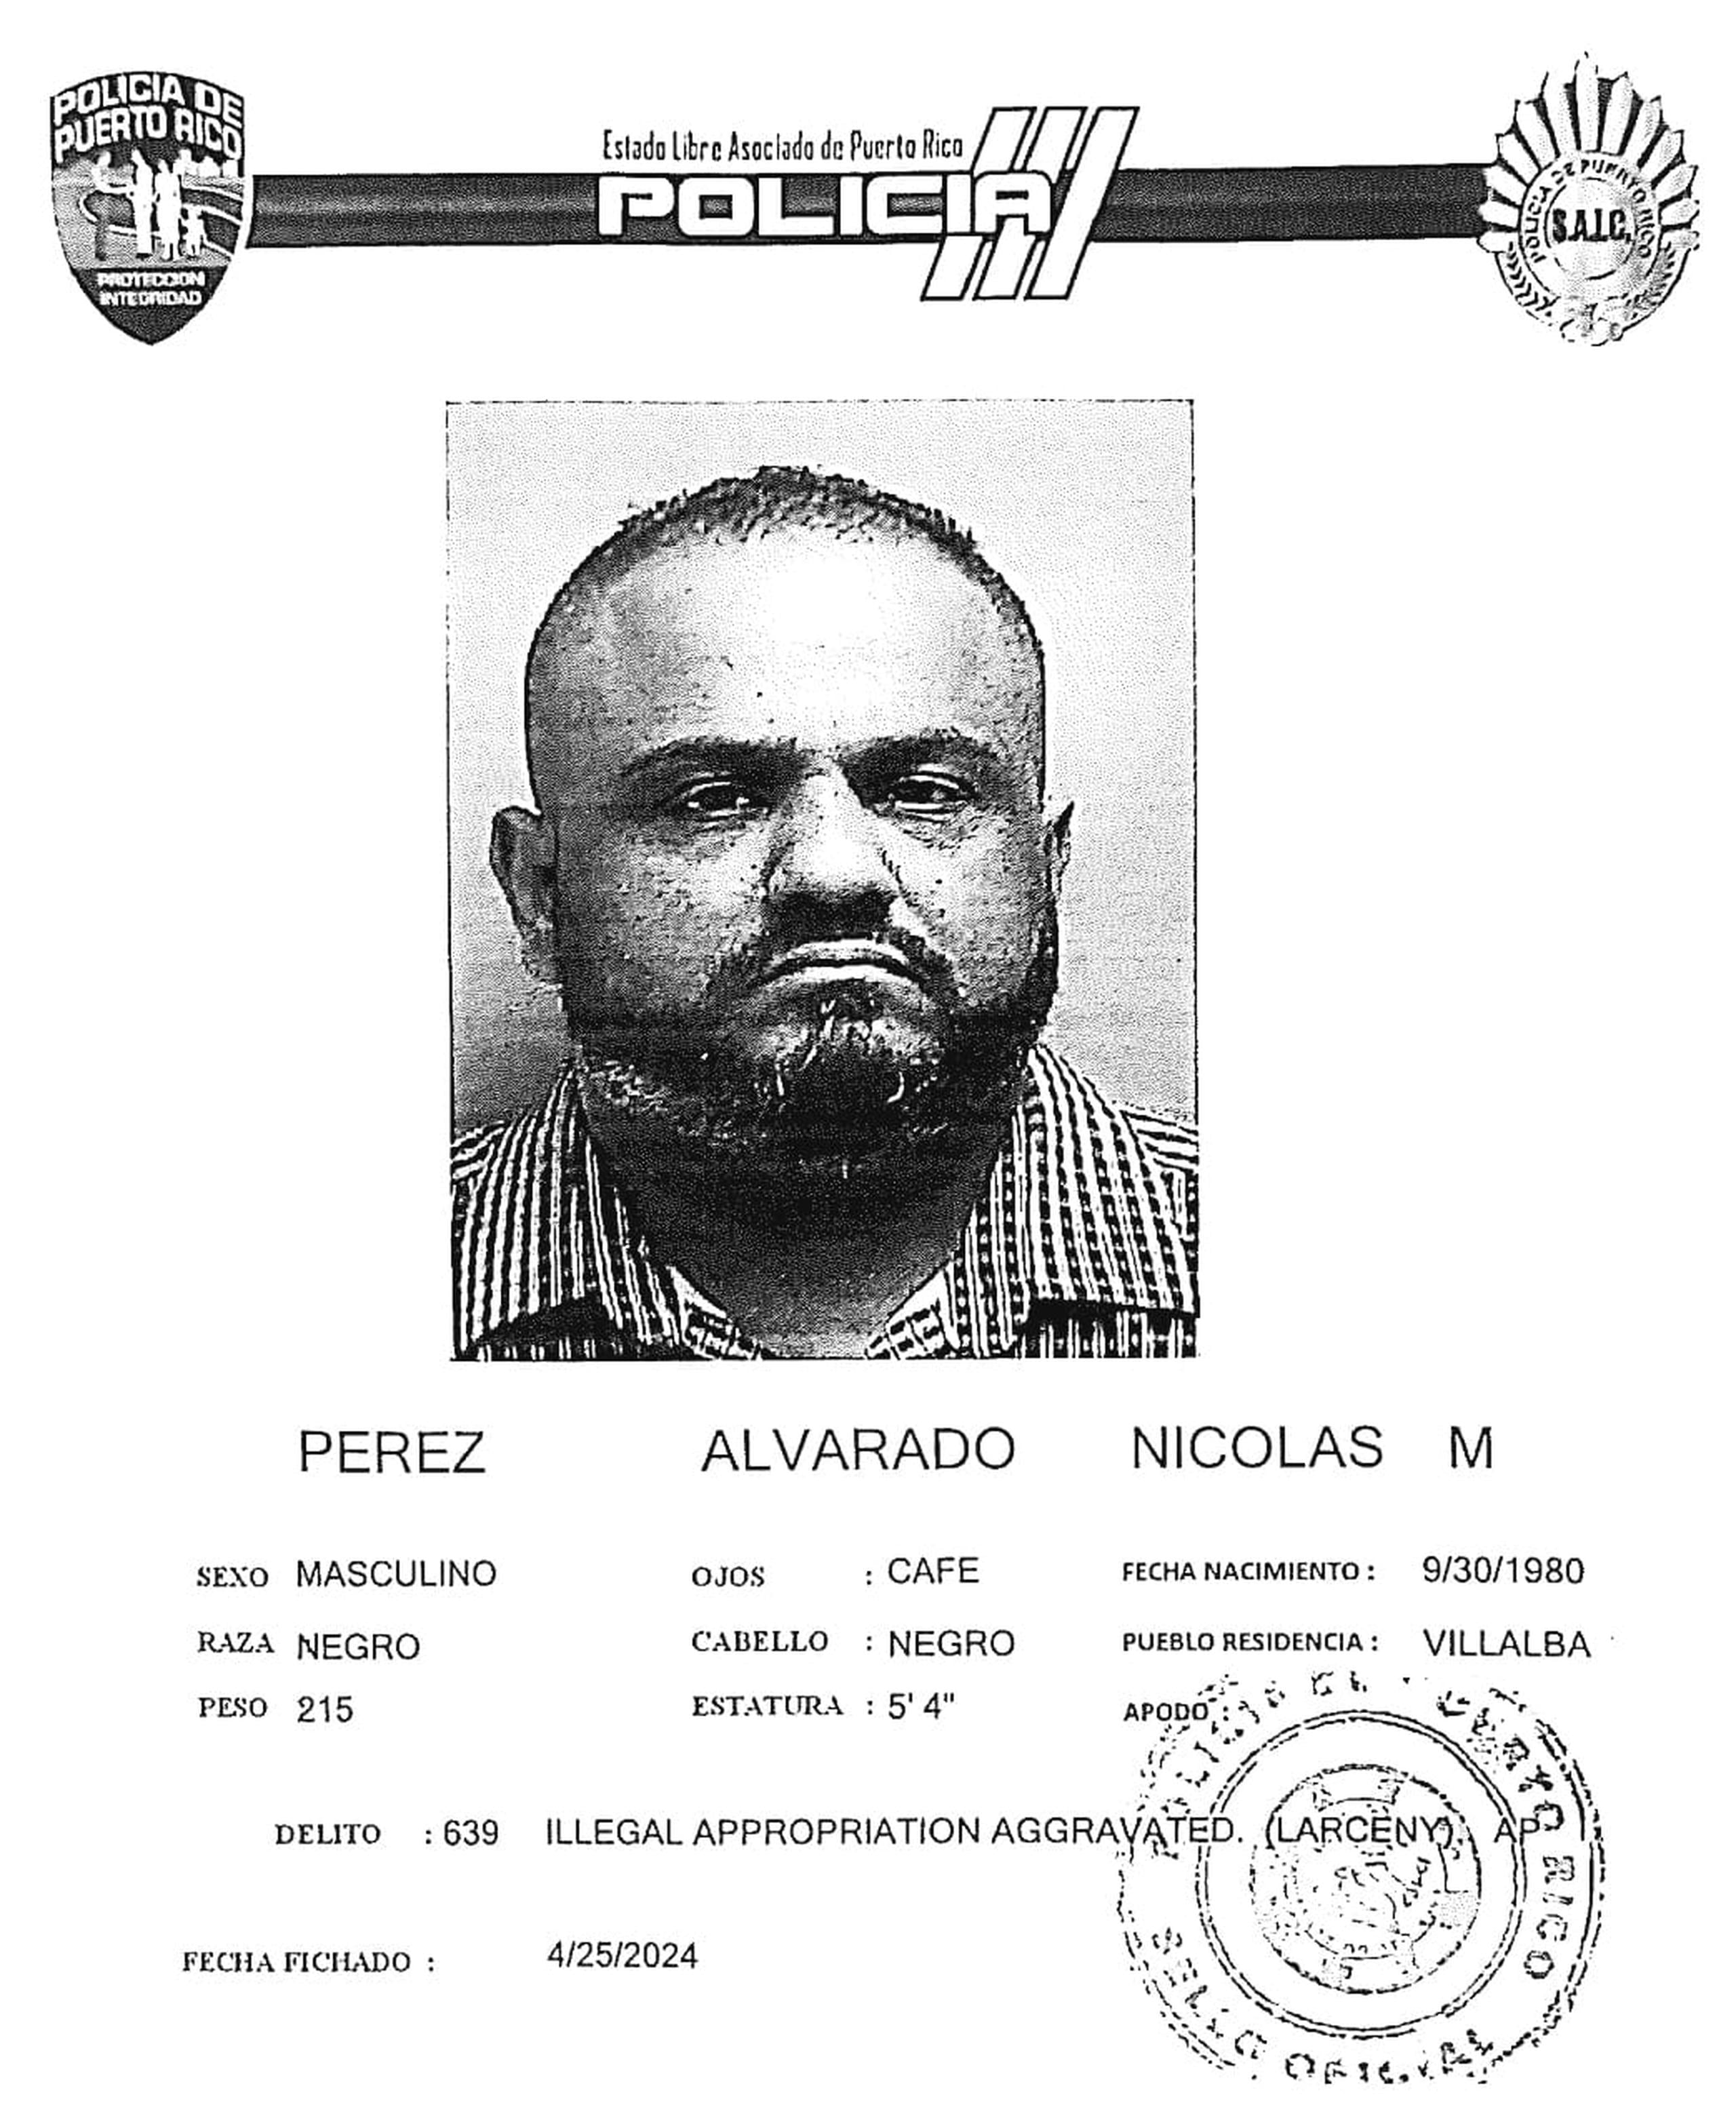 Nicolás M. Pérez Alvarado de 43 años, quien enfrenta cargos de apropiación ilegal y violación a la Ley de Bancos, quedó en libertad bajo fianza.